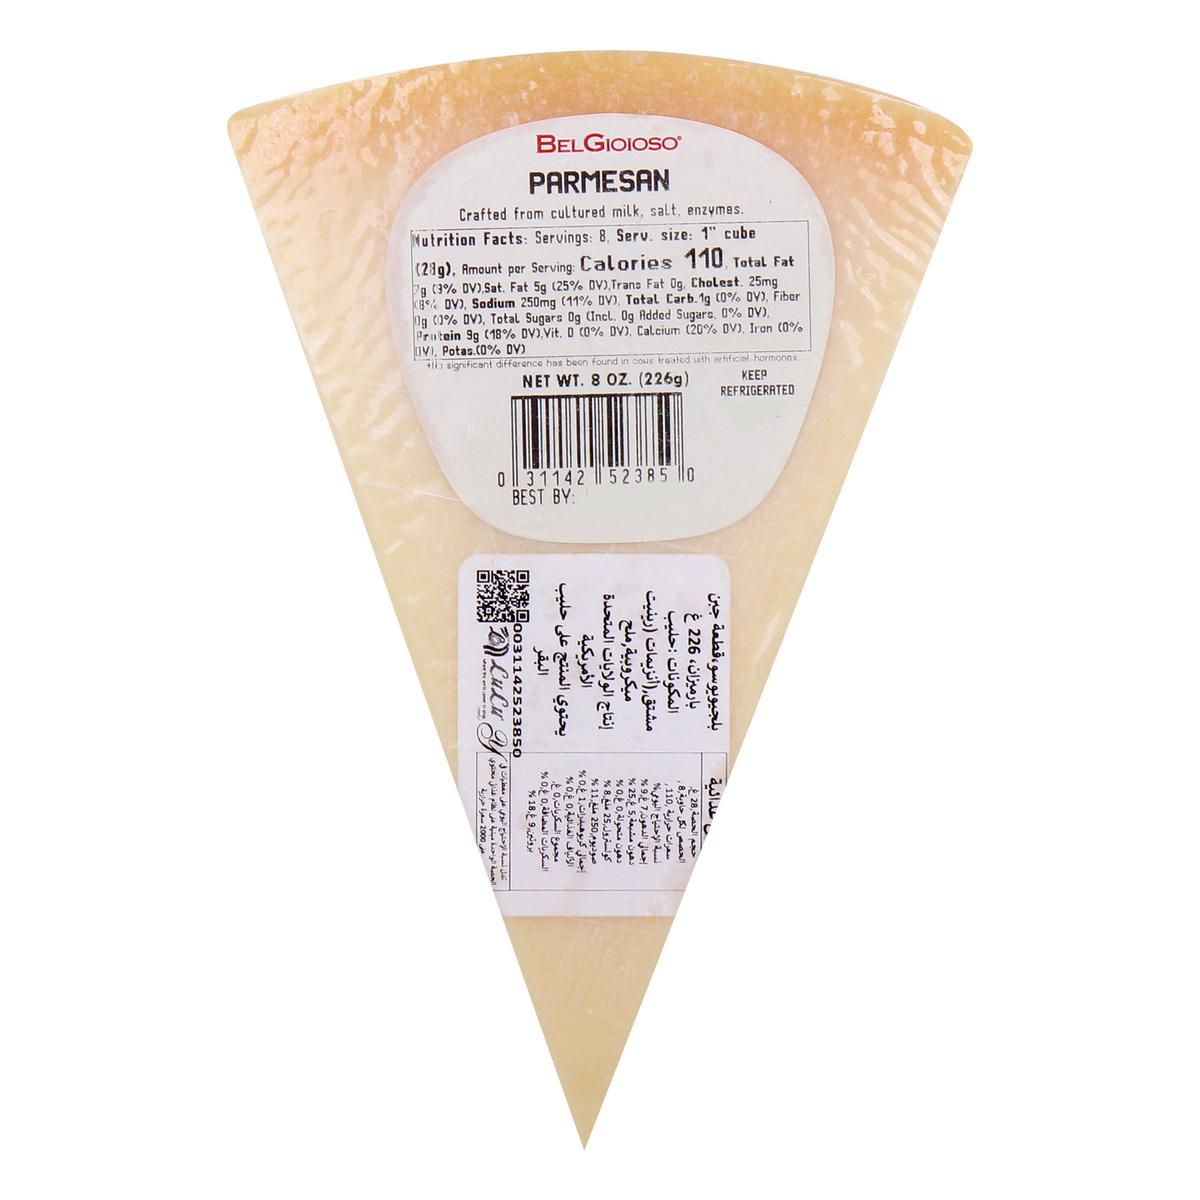 Belgioioso Parmesan Cheese Wedge, 8 oz